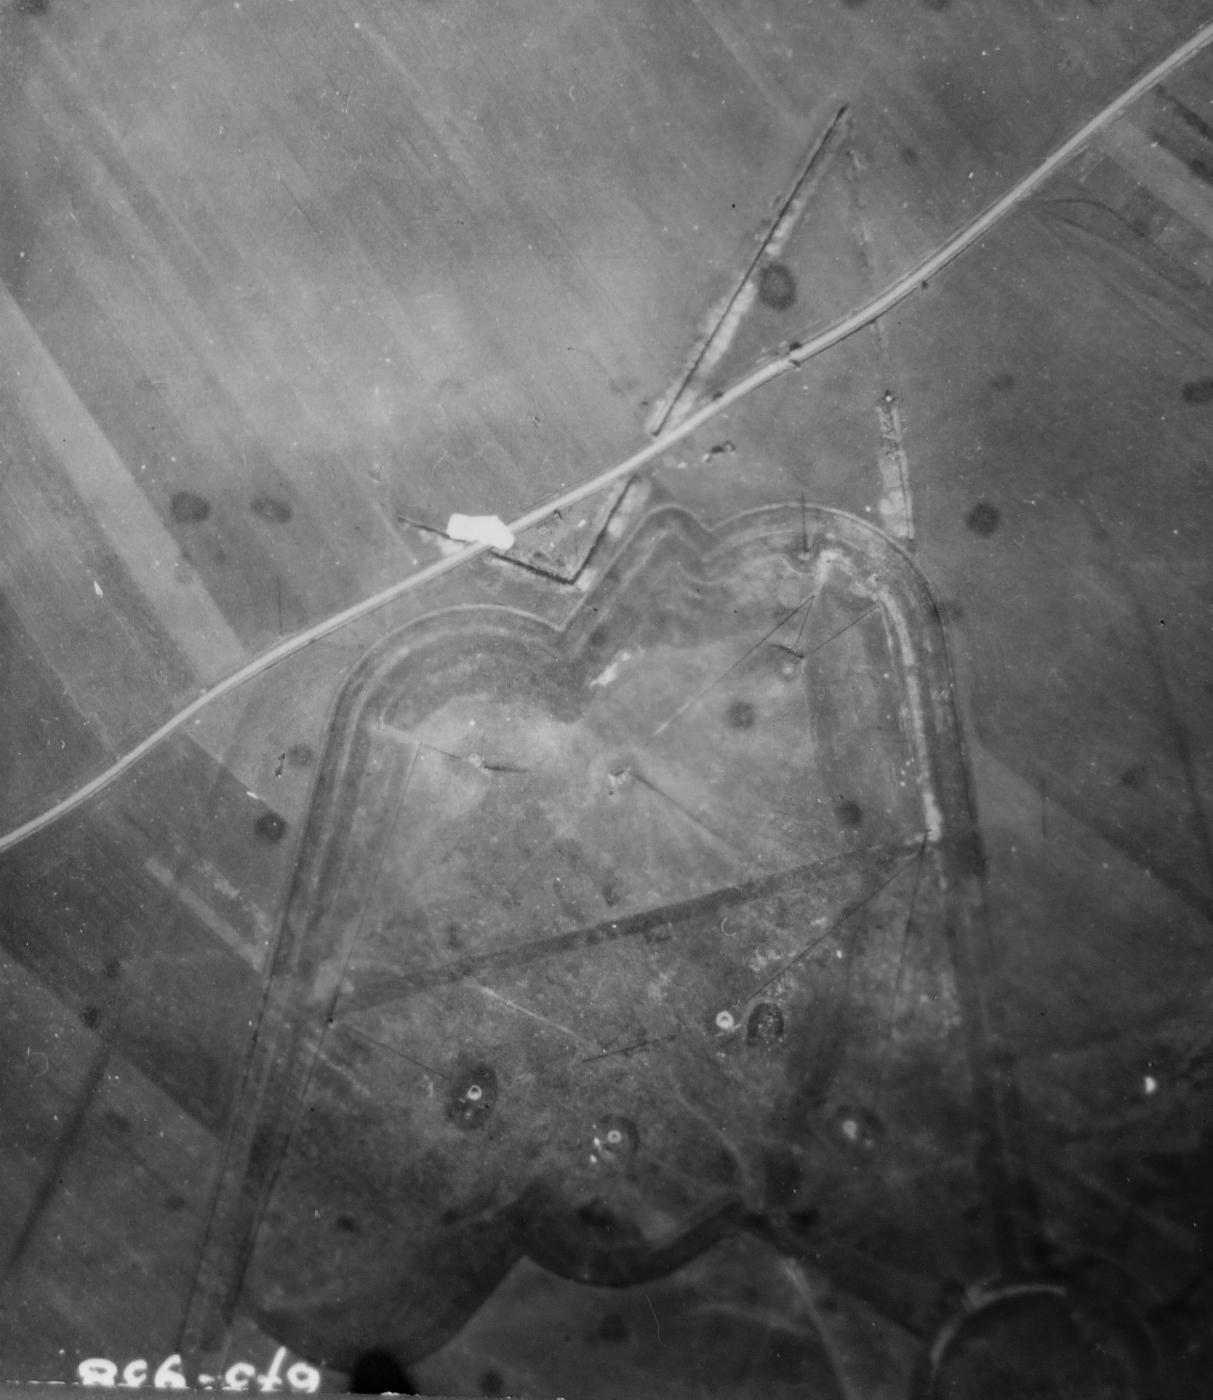 Ligne Maginot - BREHAIN - A6 - (Ouvrage d'artillerie) - Blocs de l'avant de l'ouvrage.
Noter le fossé en avant des blocs

Vue aérienne - Mission 60 Altitude 2000 - 9 mars 1940